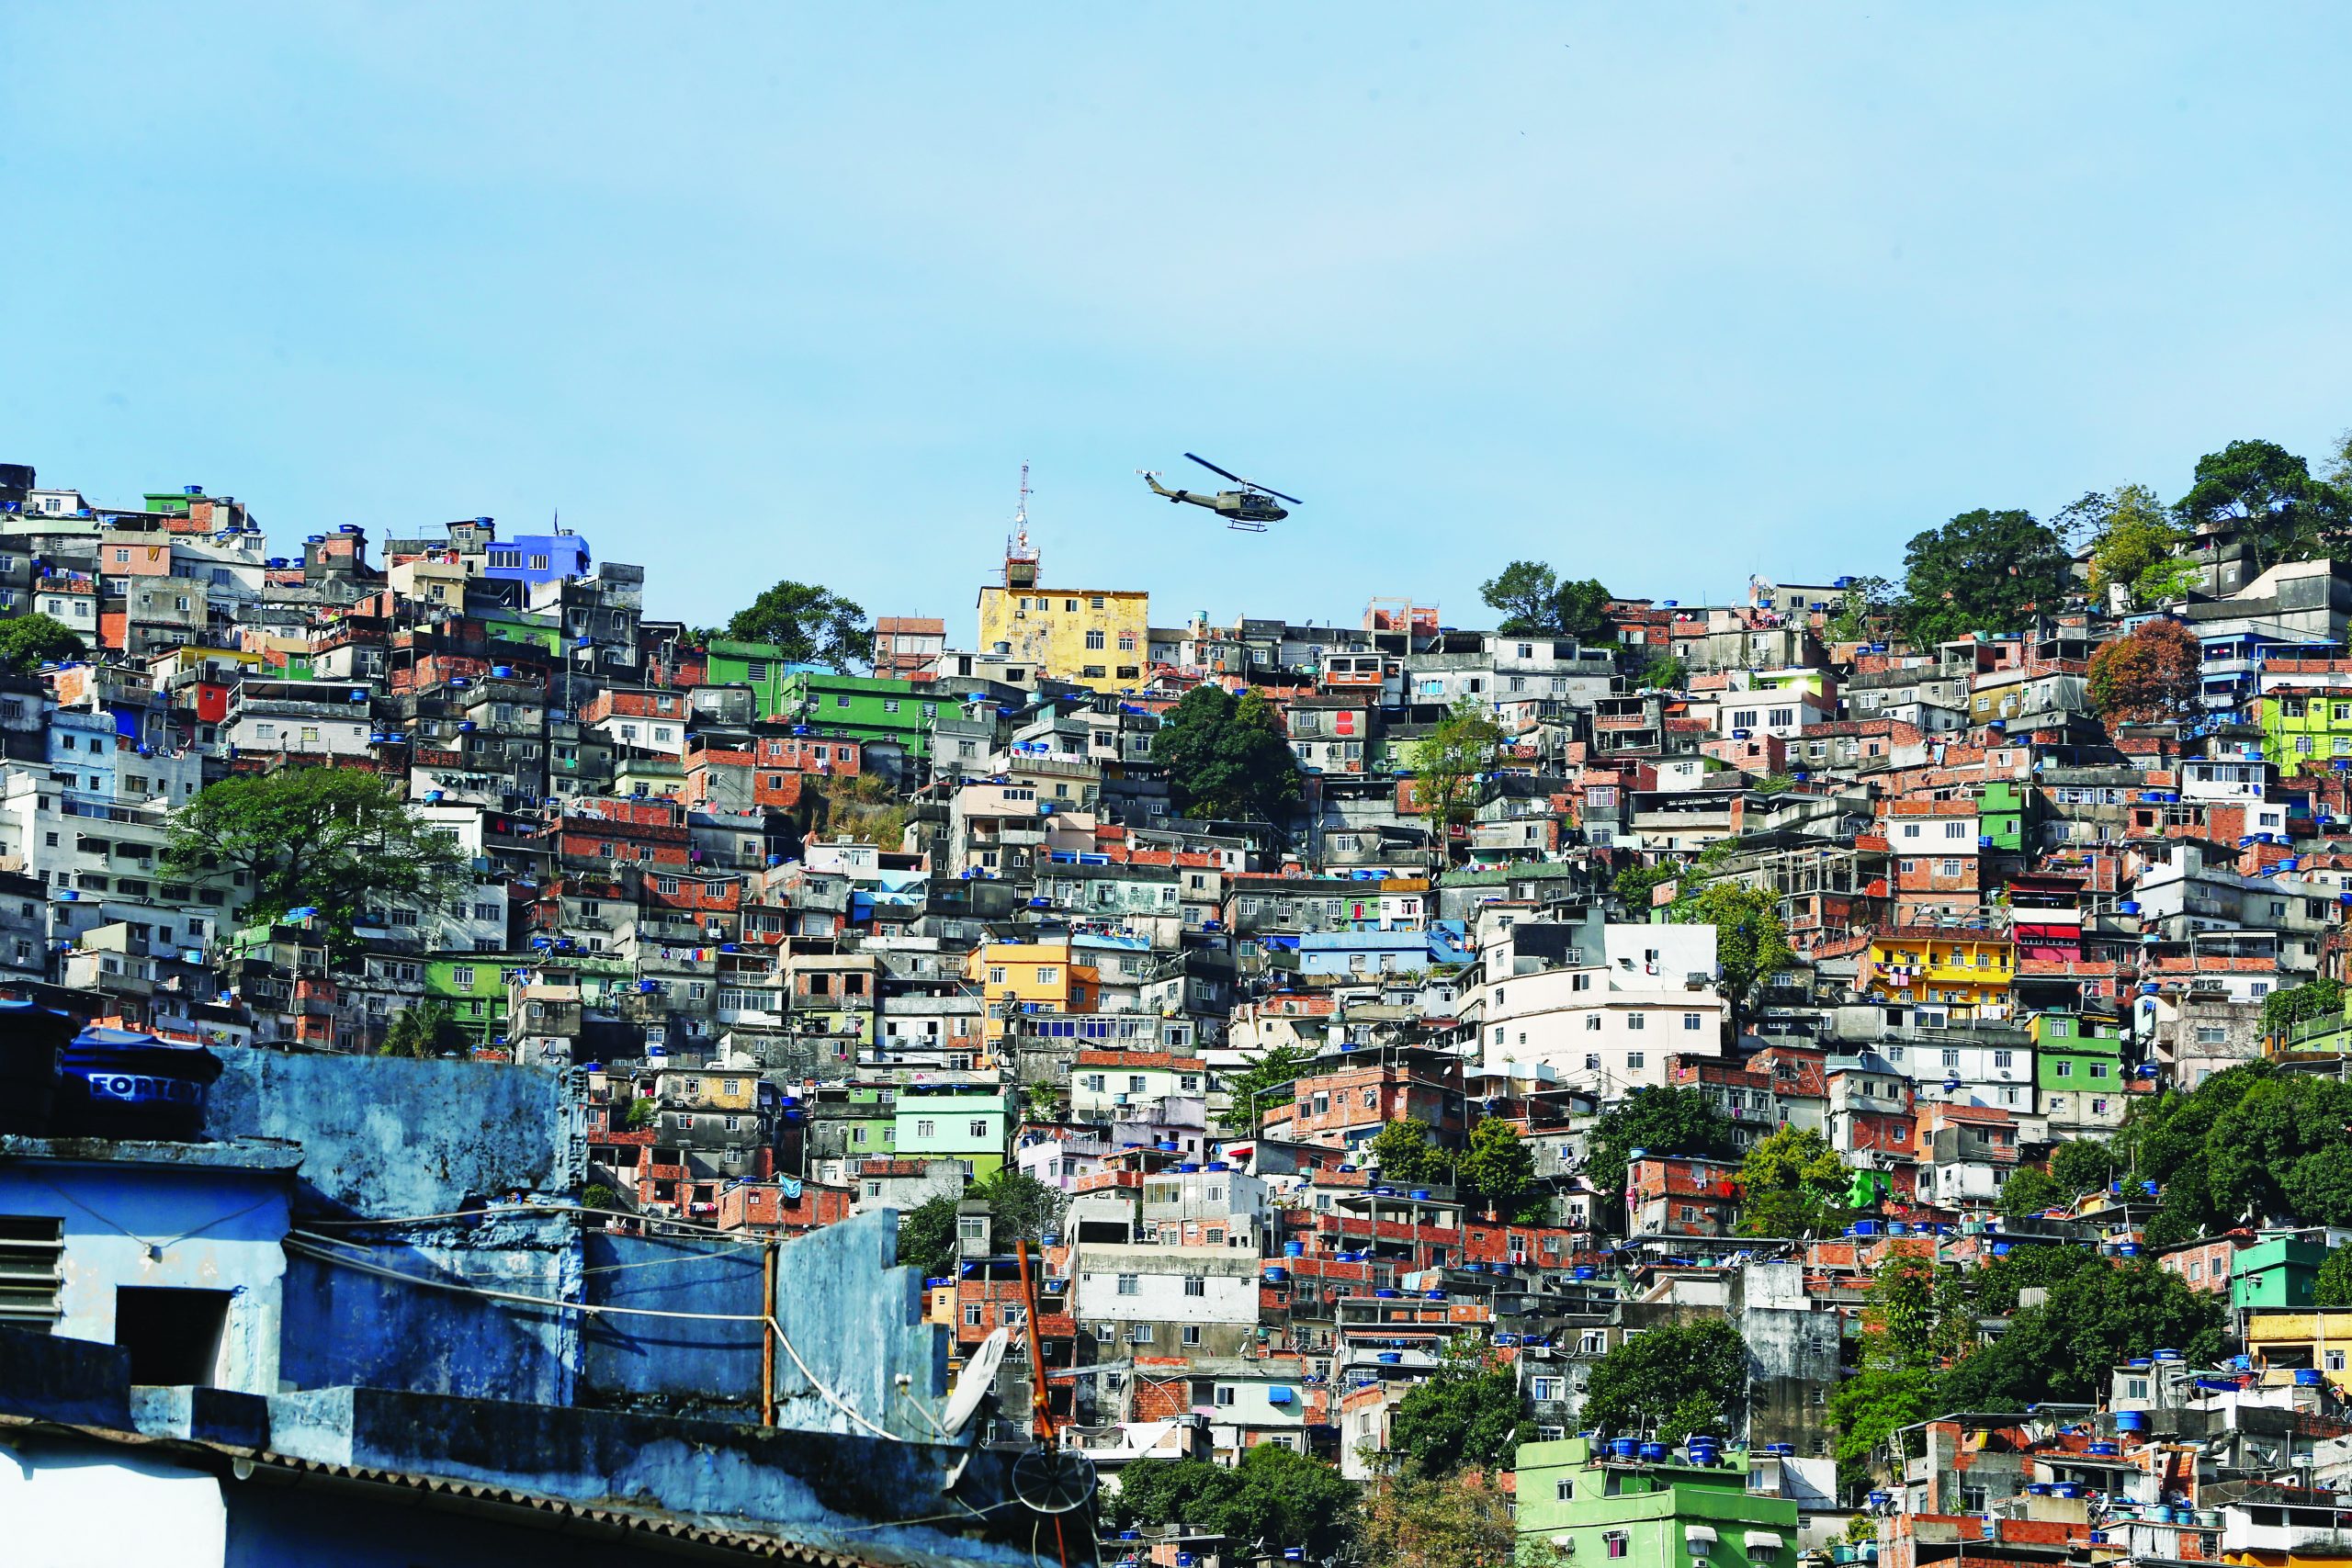 Relat Rio Nd A Nova Rocinha N O Aqui Em Florian Polis Nd Mais